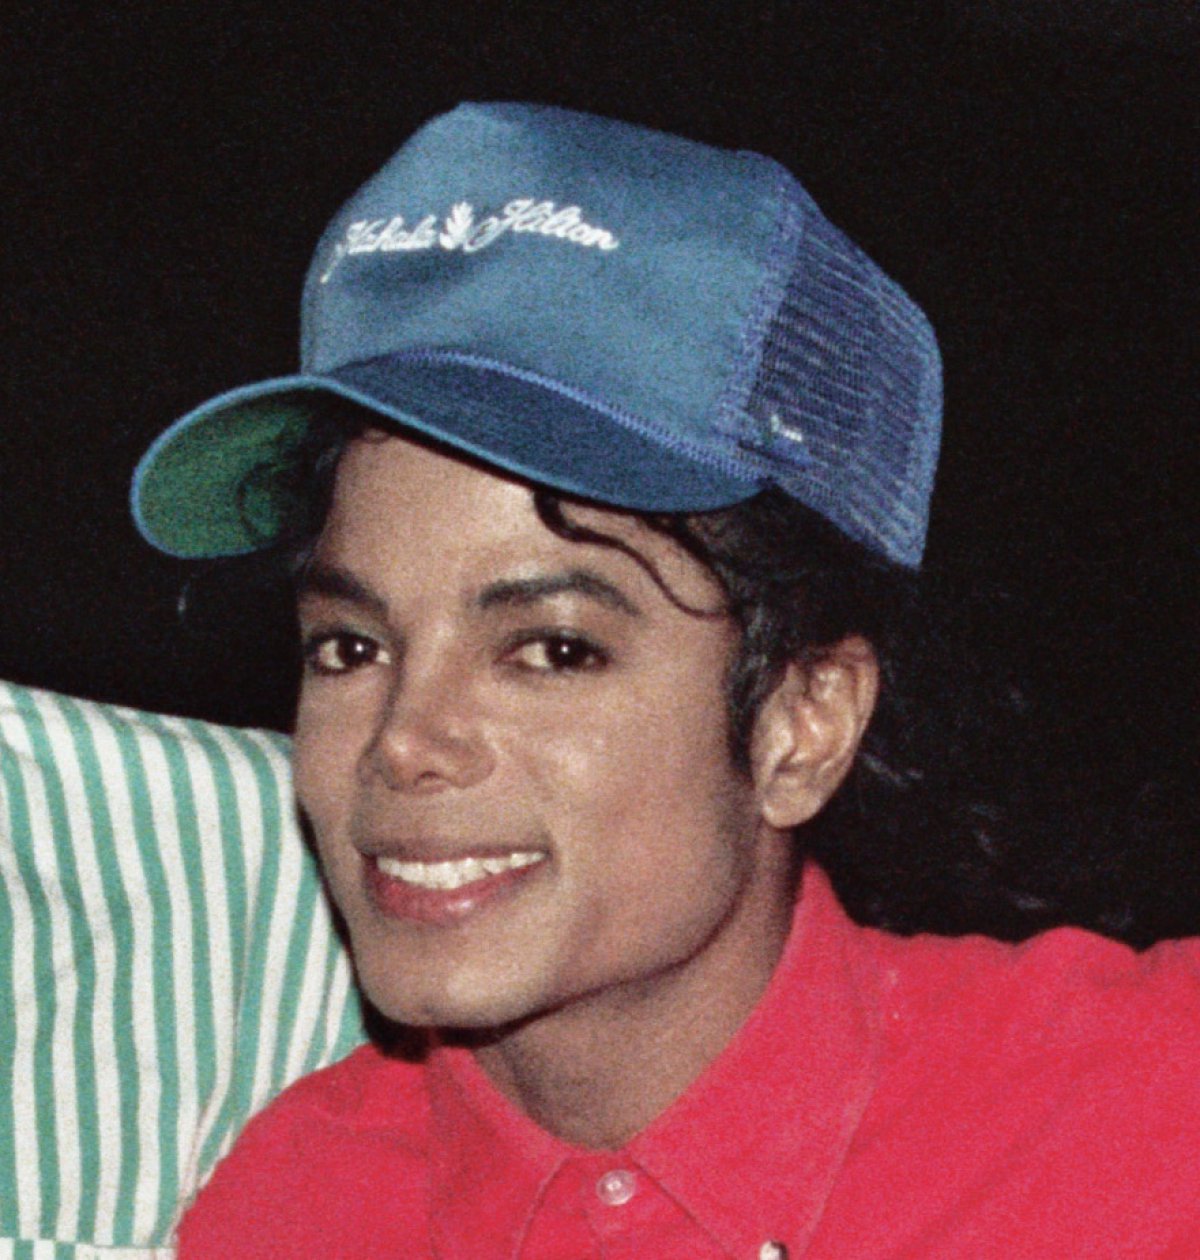 Menores De Edad - Michael Jackson y su extraÃ±a fijaciÃ³n por menores de edad ...